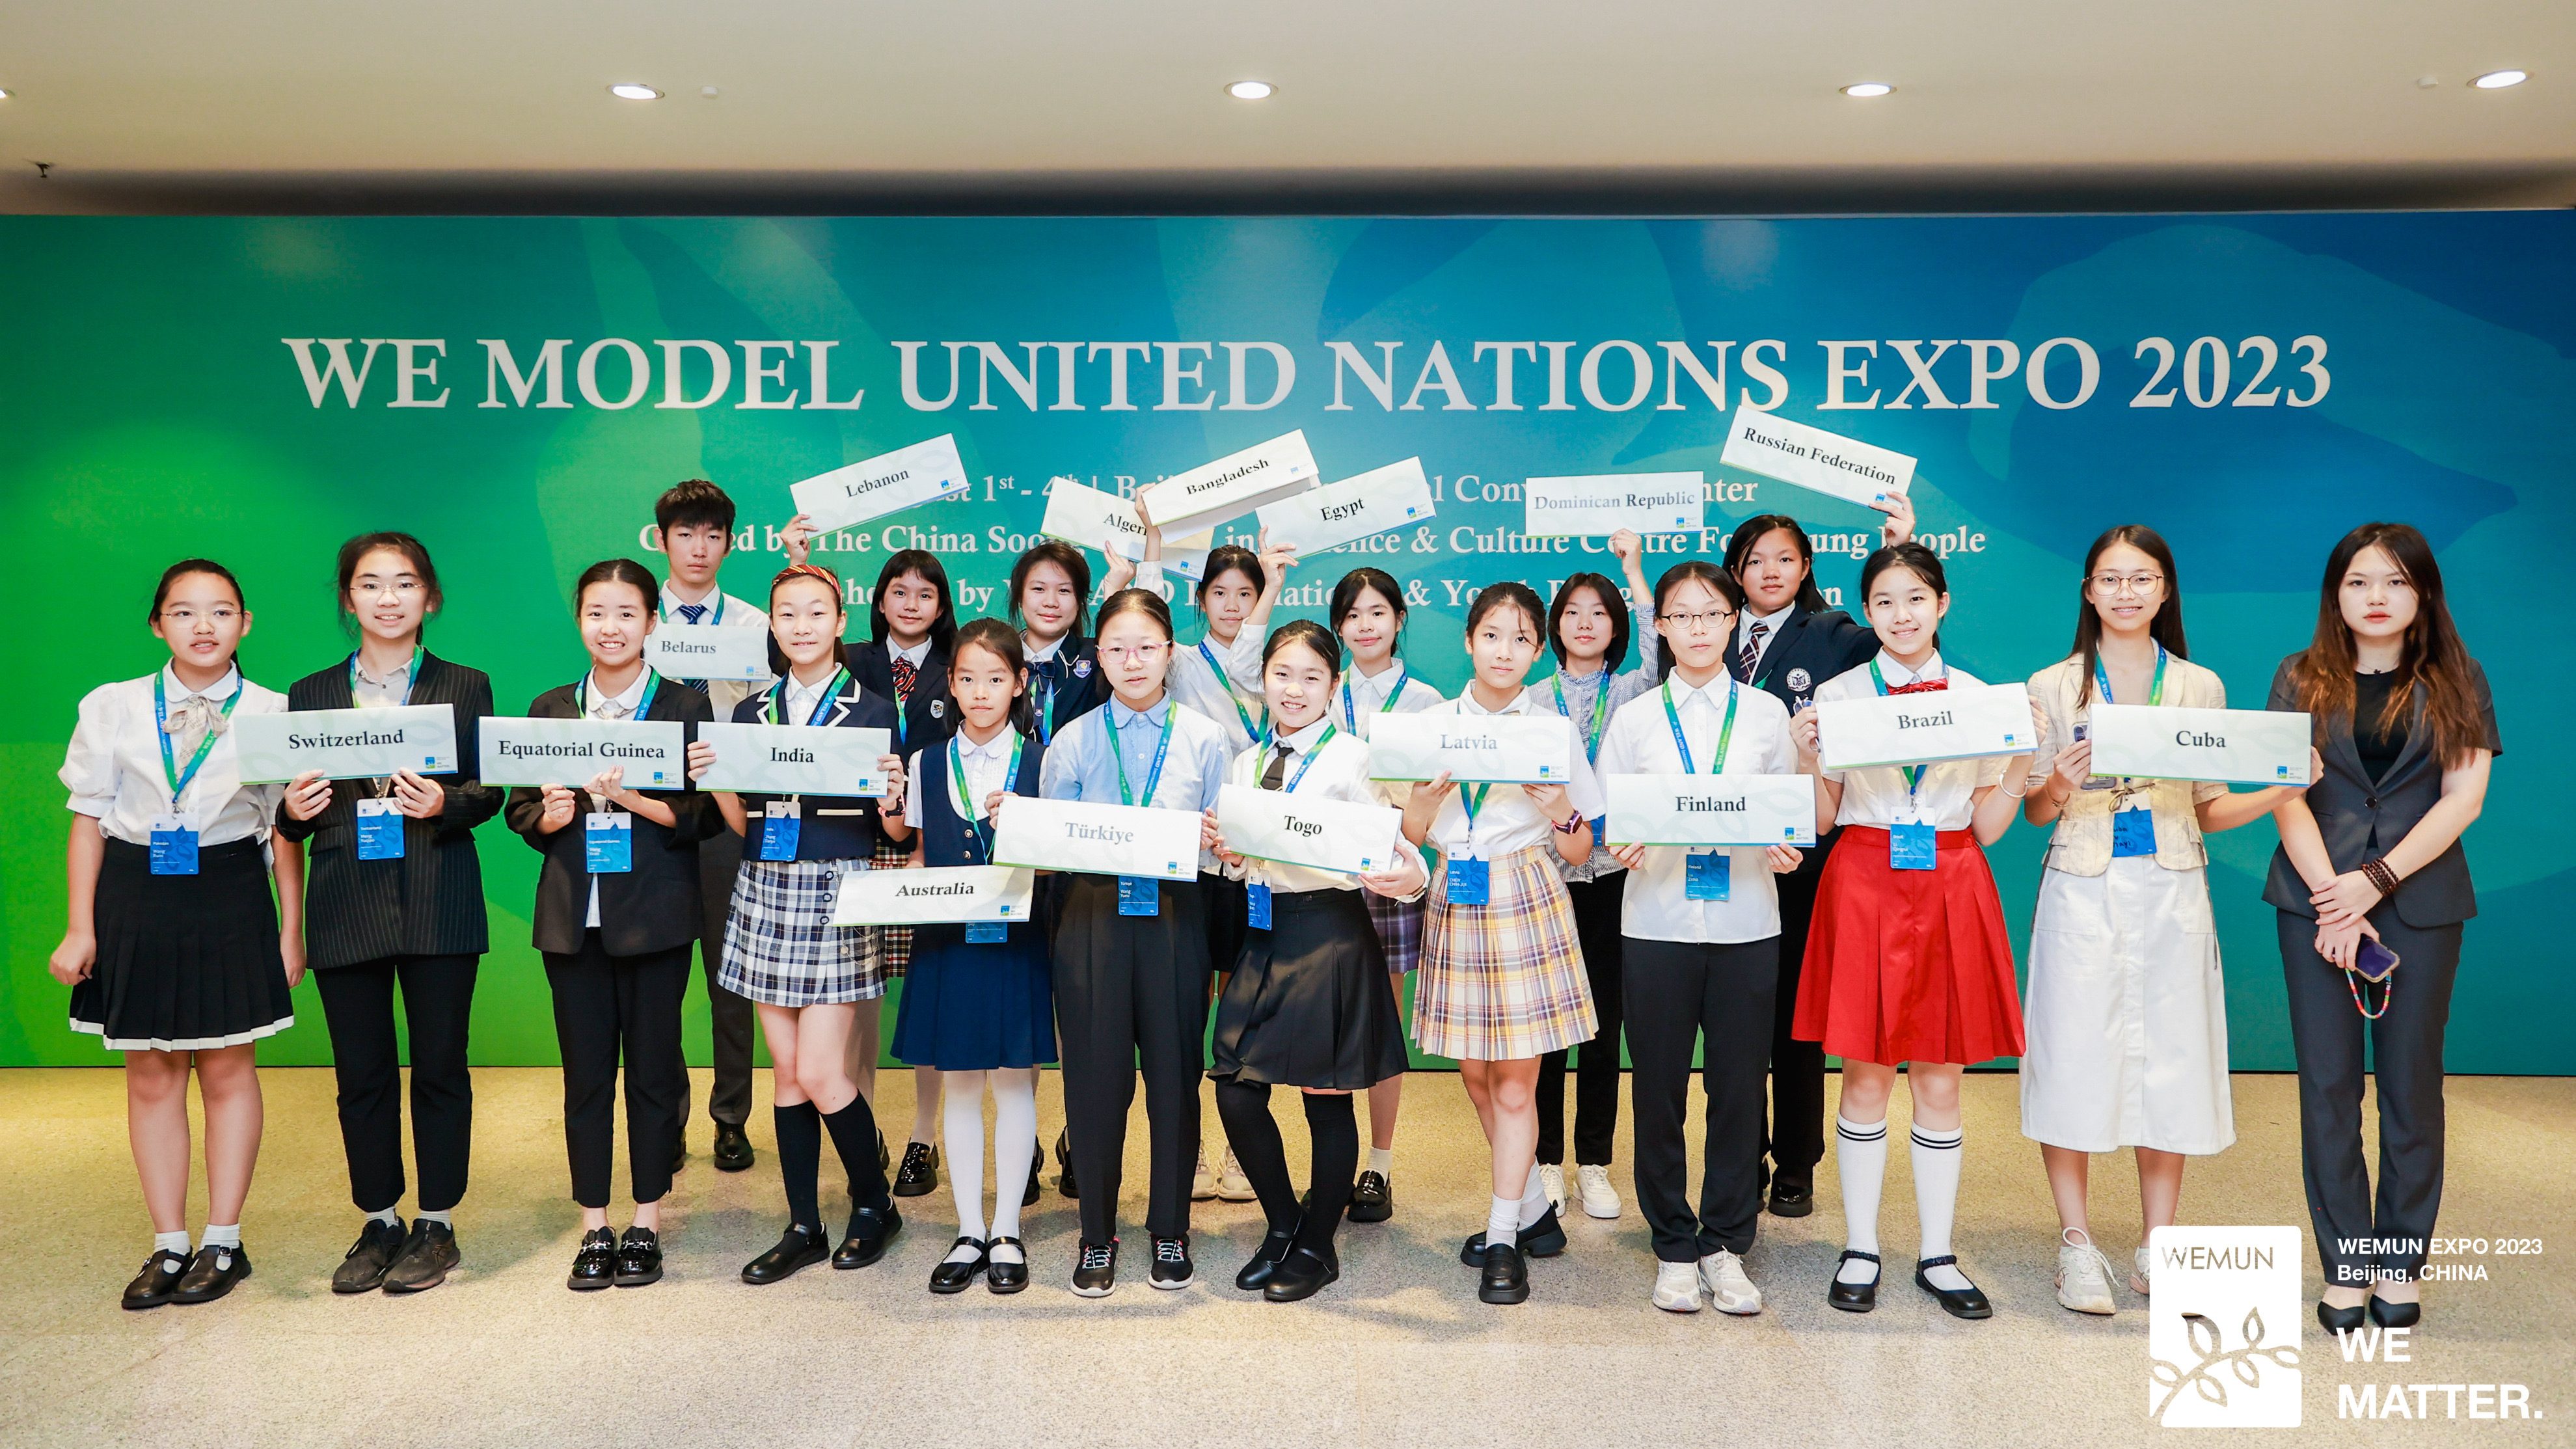 久别重逢,同舟共济,全球青年模拟联合国大会开幕